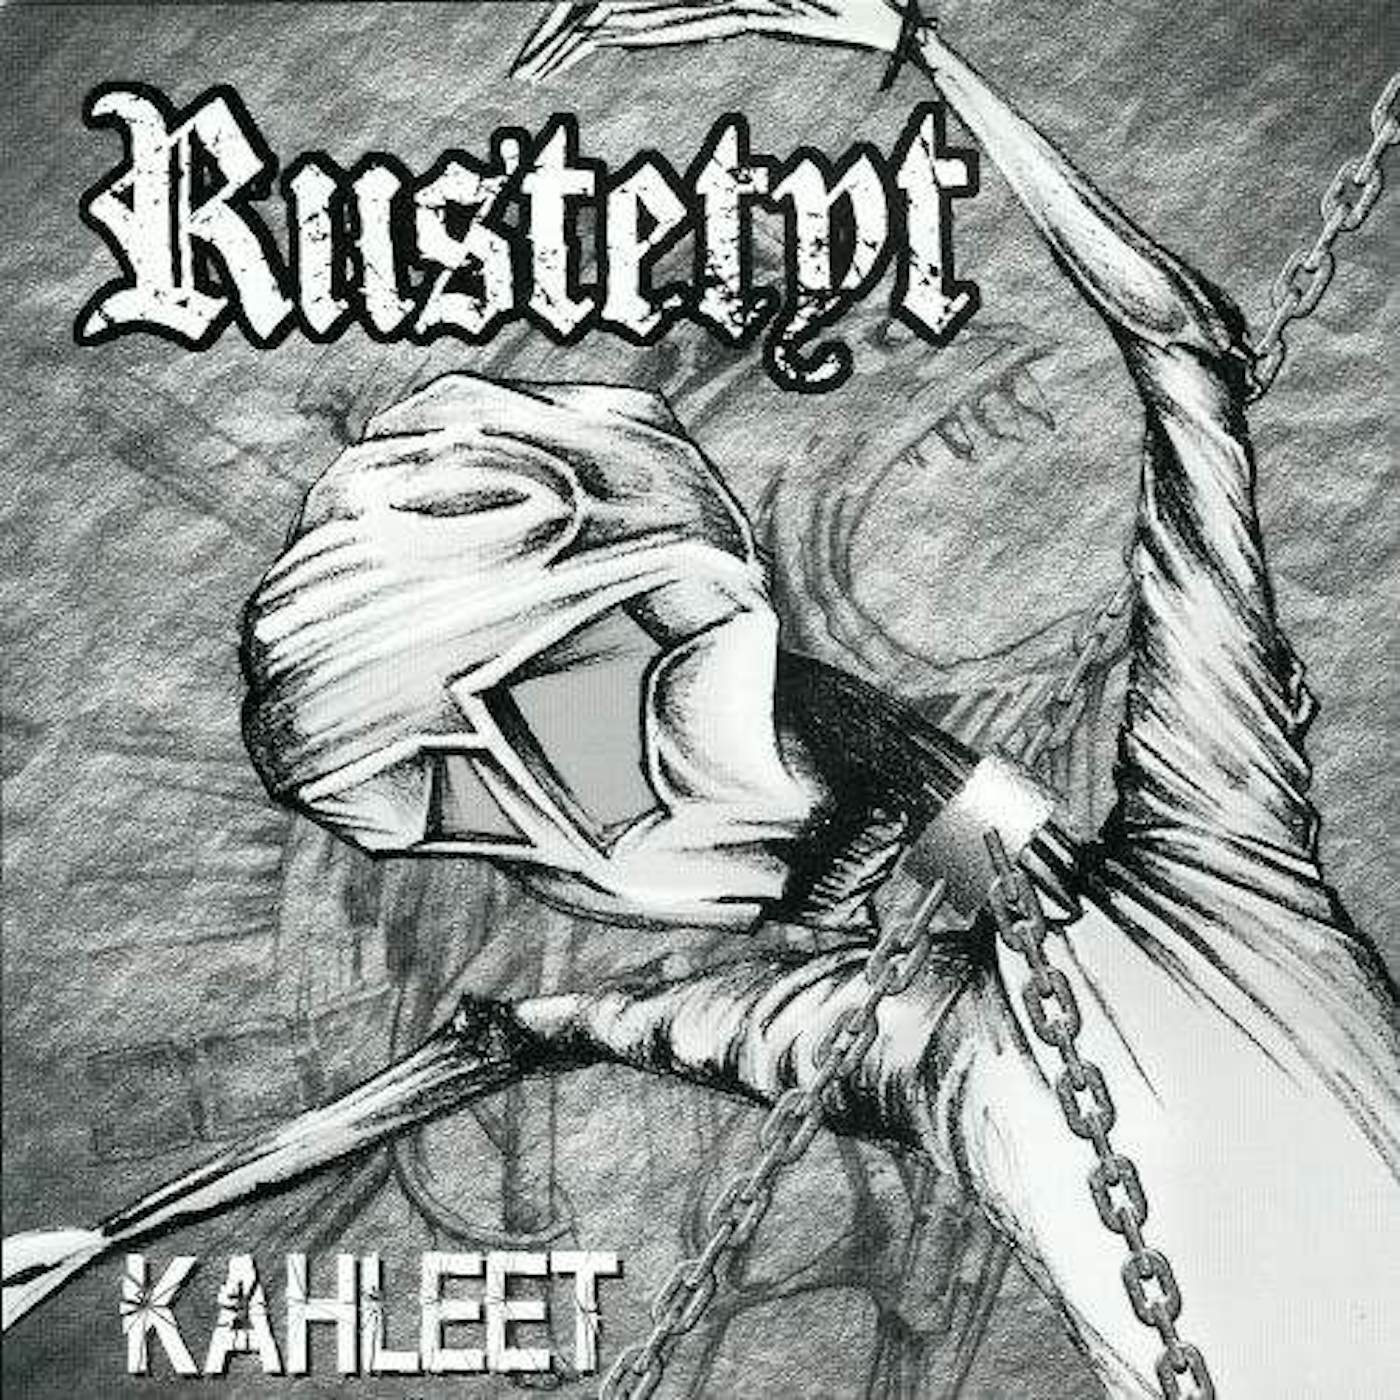 Riistetyt "Kahleet" 7" (Vinyl)